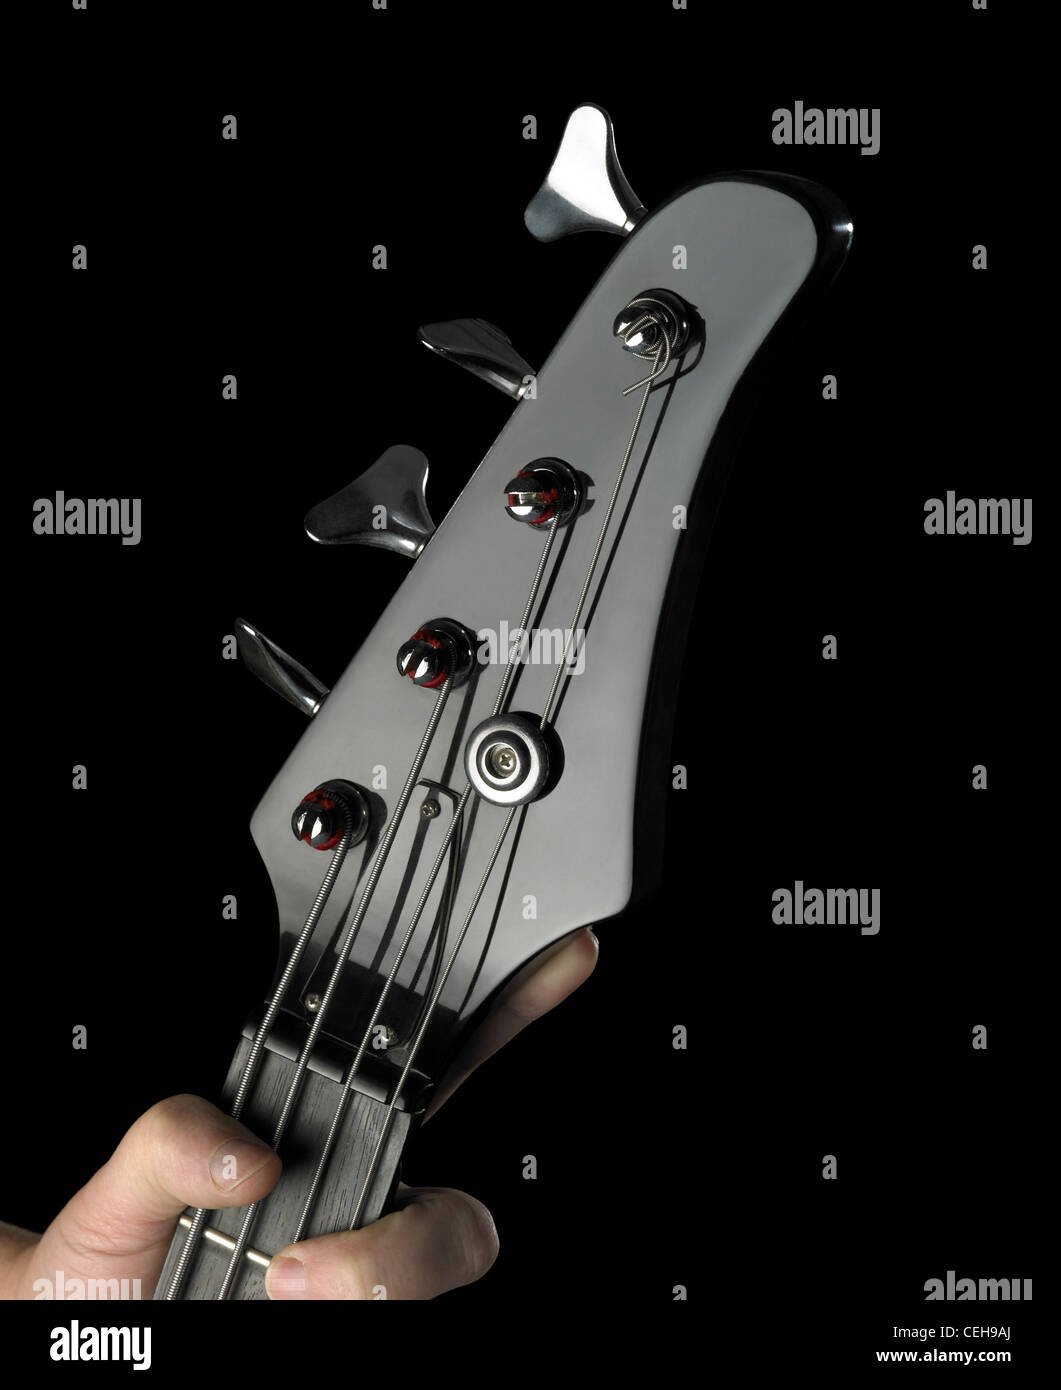 Dettaglio di un black bass chitarra e parte della mano tesa nel buio indietro Foto Stock